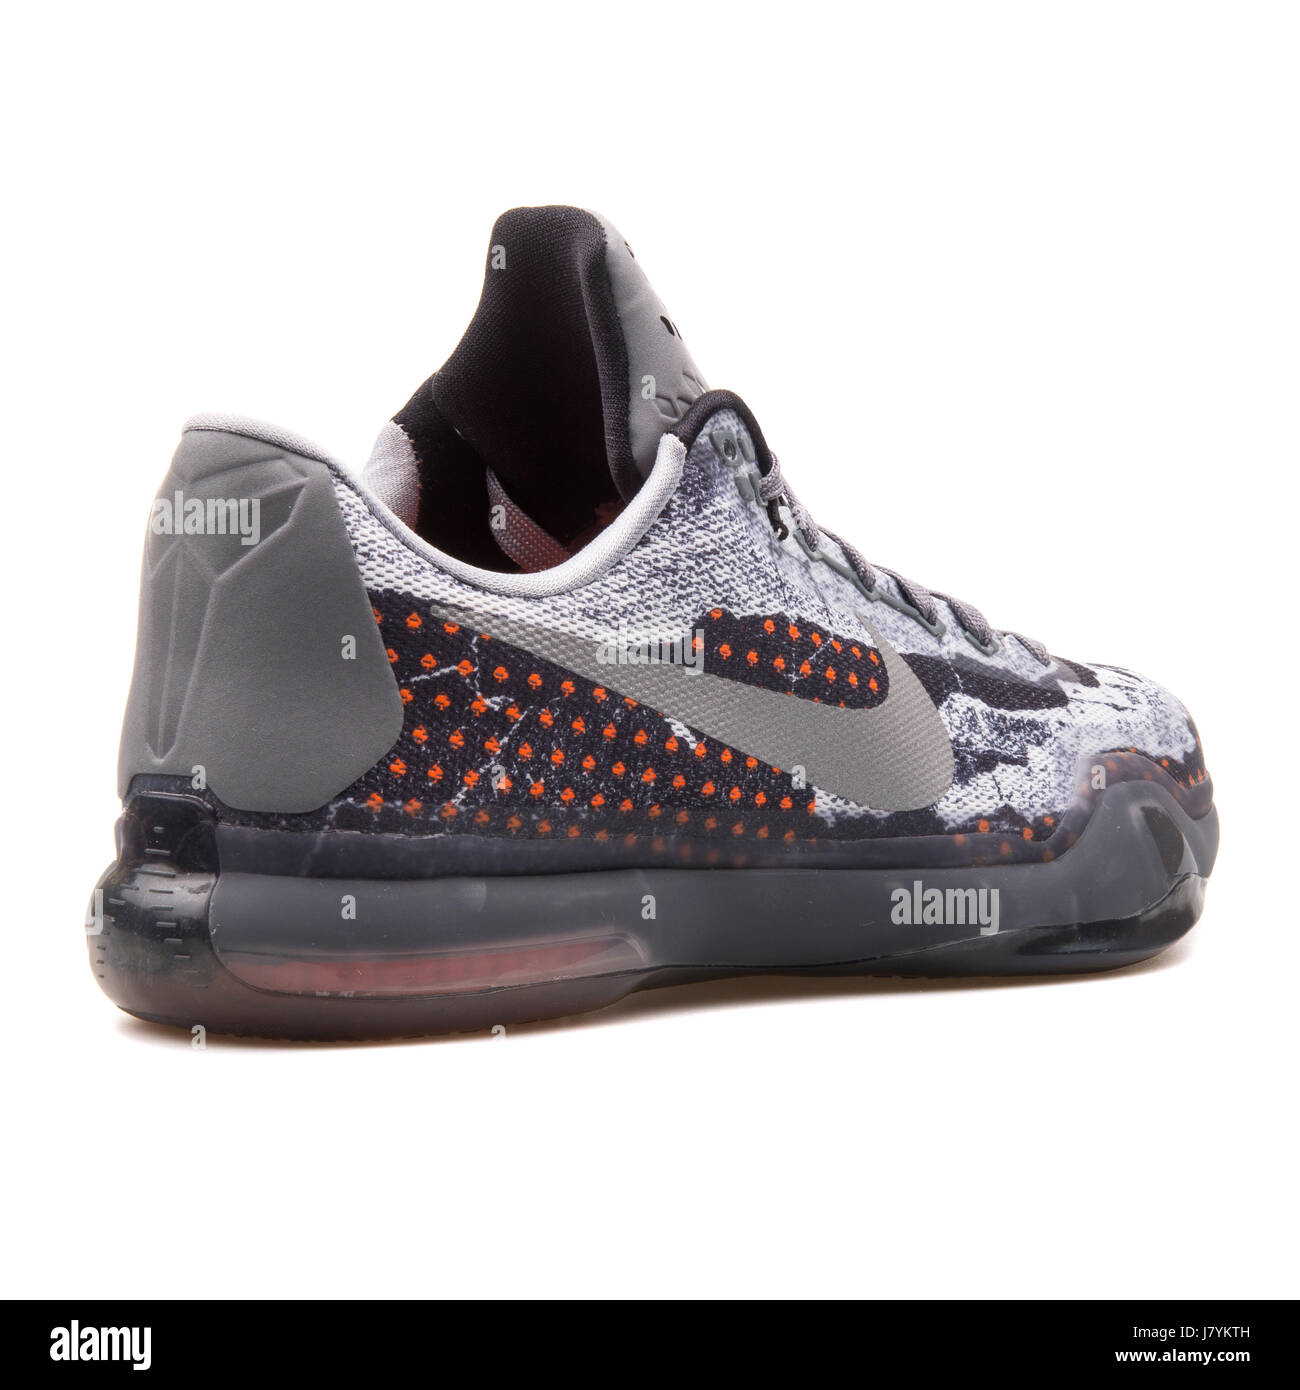 Nike Kobe X gris rojo zapatillas de baloncesto de los - 705317-001 Fotografía de stock - Alamy